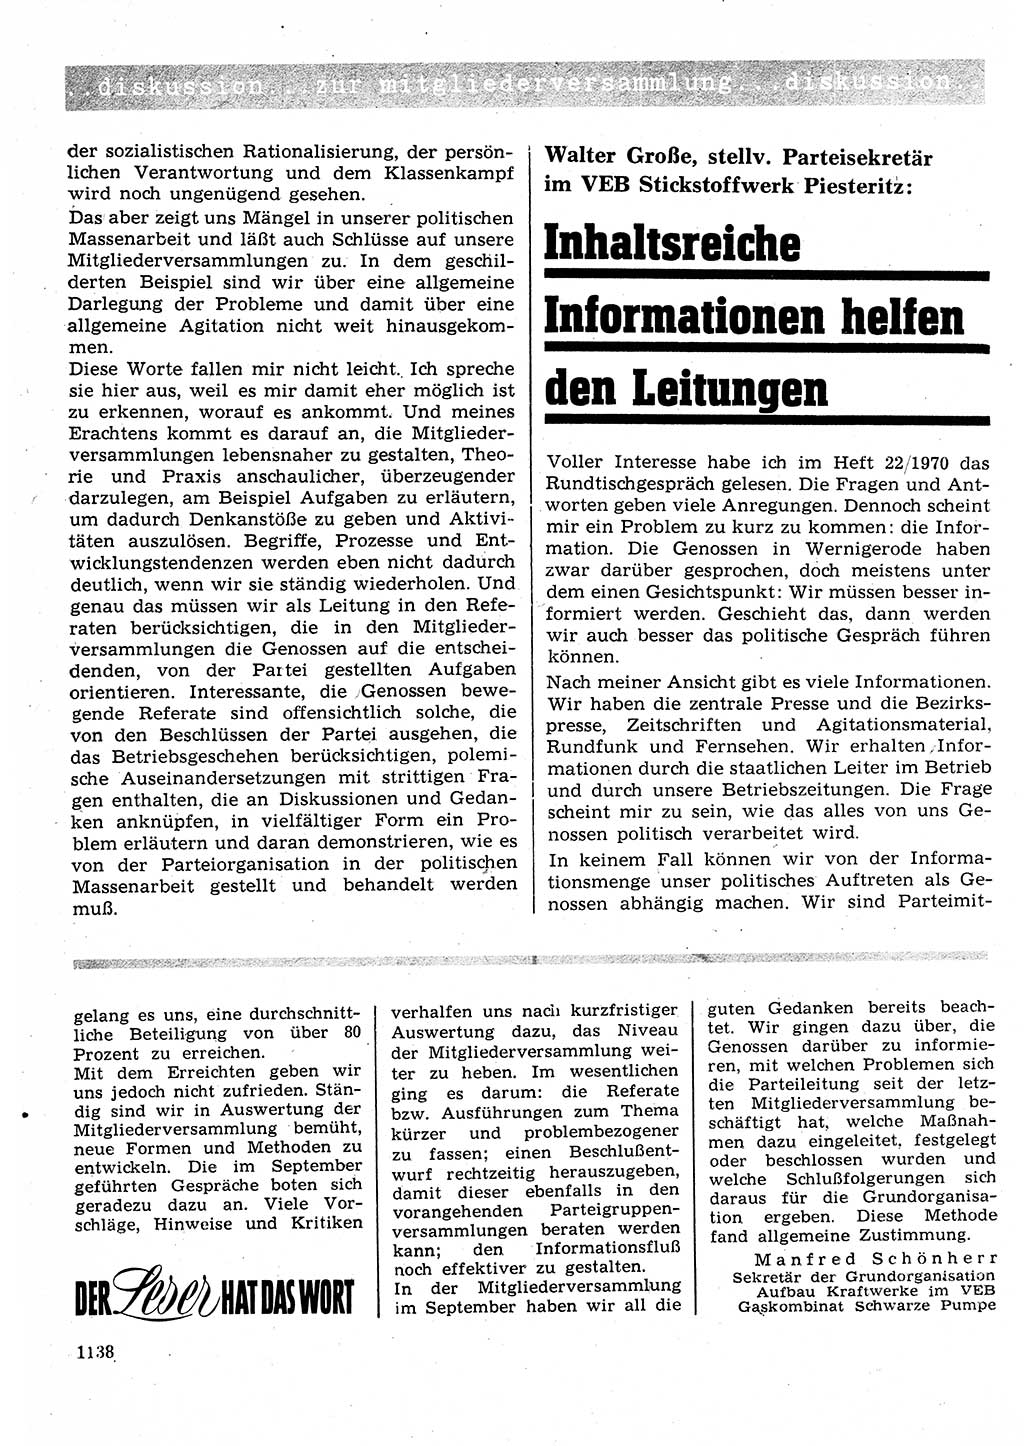 Neuer Weg (NW), Organ des Zentralkomitees (ZK) der SED (Sozialistische Einheitspartei Deutschlands) für Fragen des Parteilebens, 25. Jahrgang [Deutsche Demokratische Republik (DDR)] 1970, Seite 1138 (NW ZK SED DDR 1970, S. 1138)